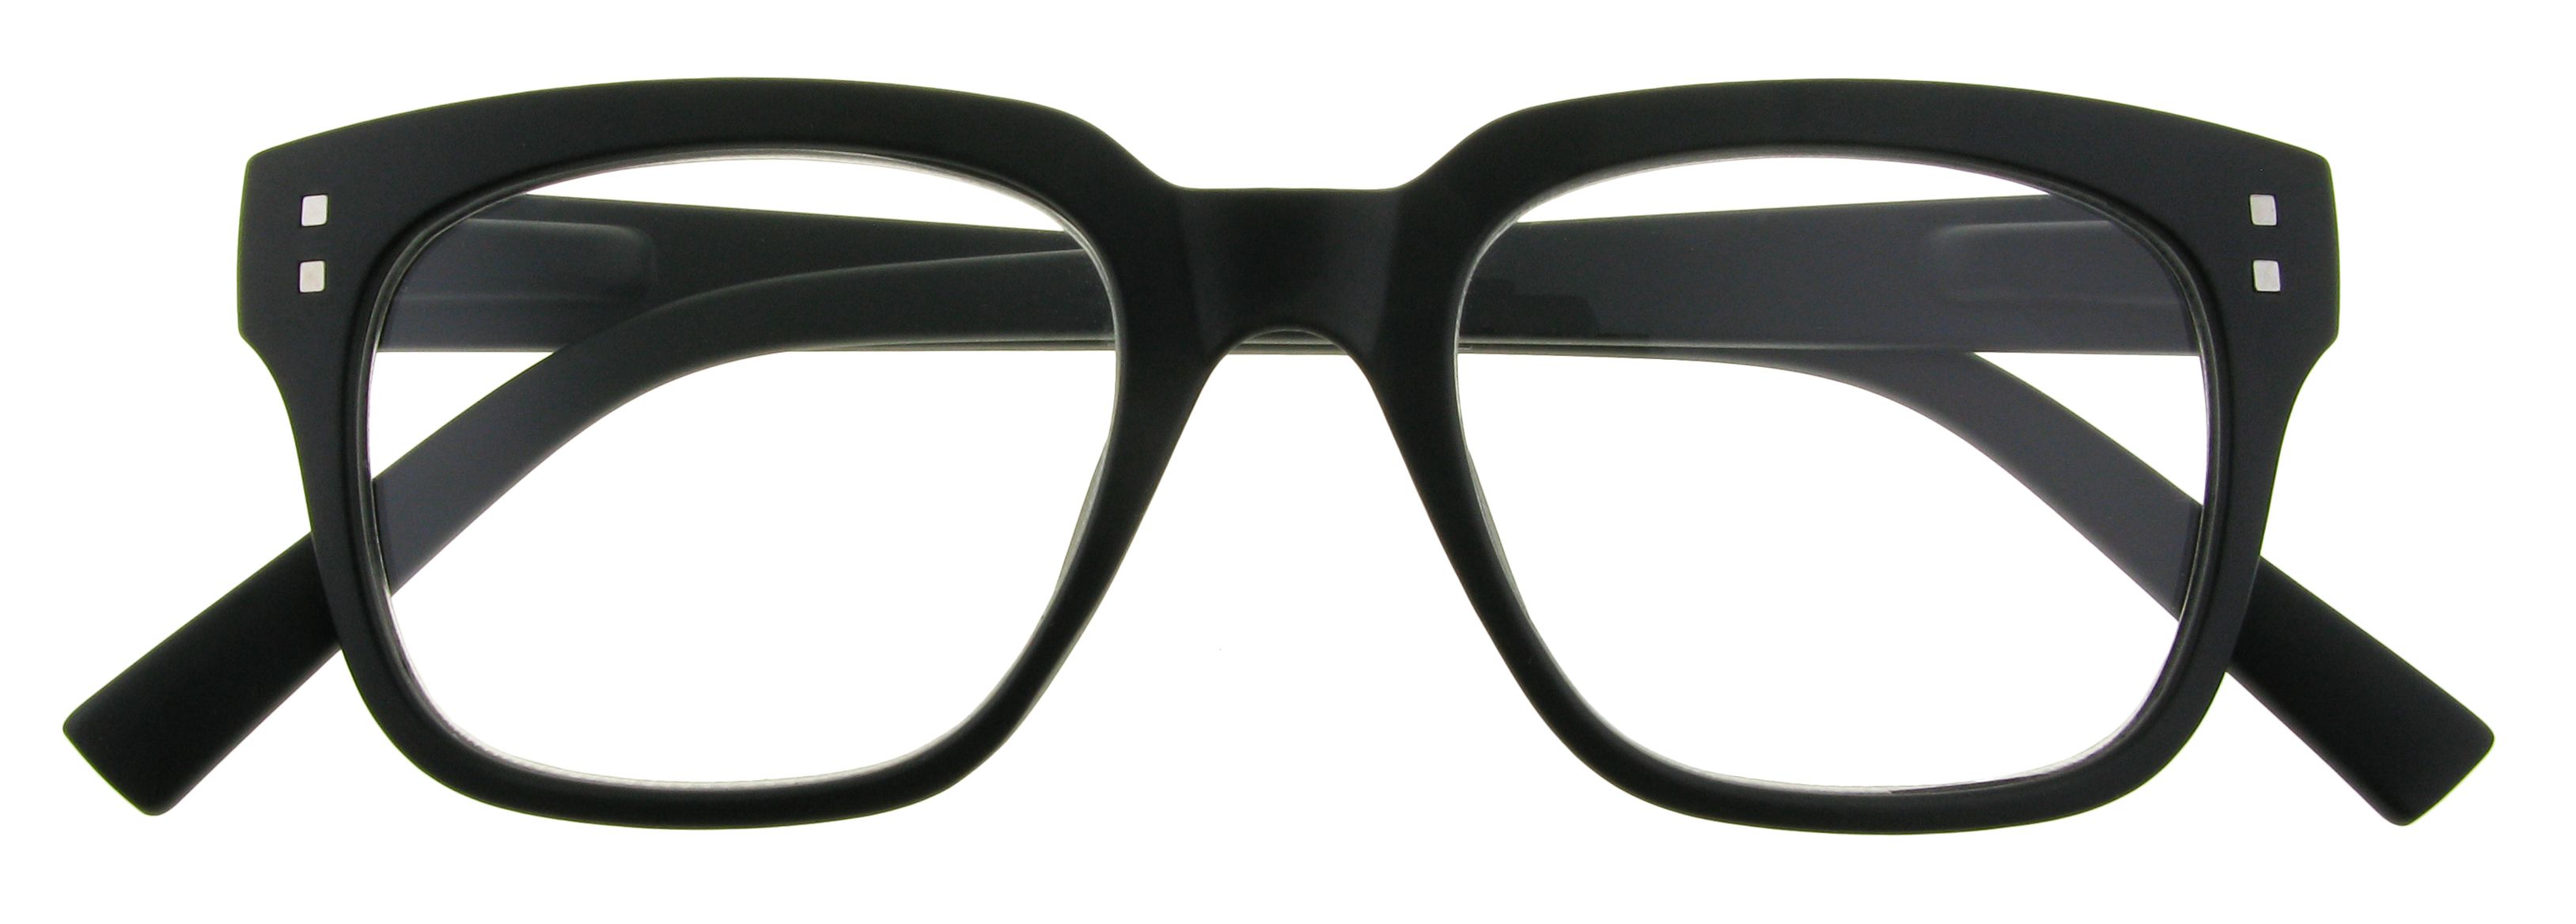 Weybridge reading glasses